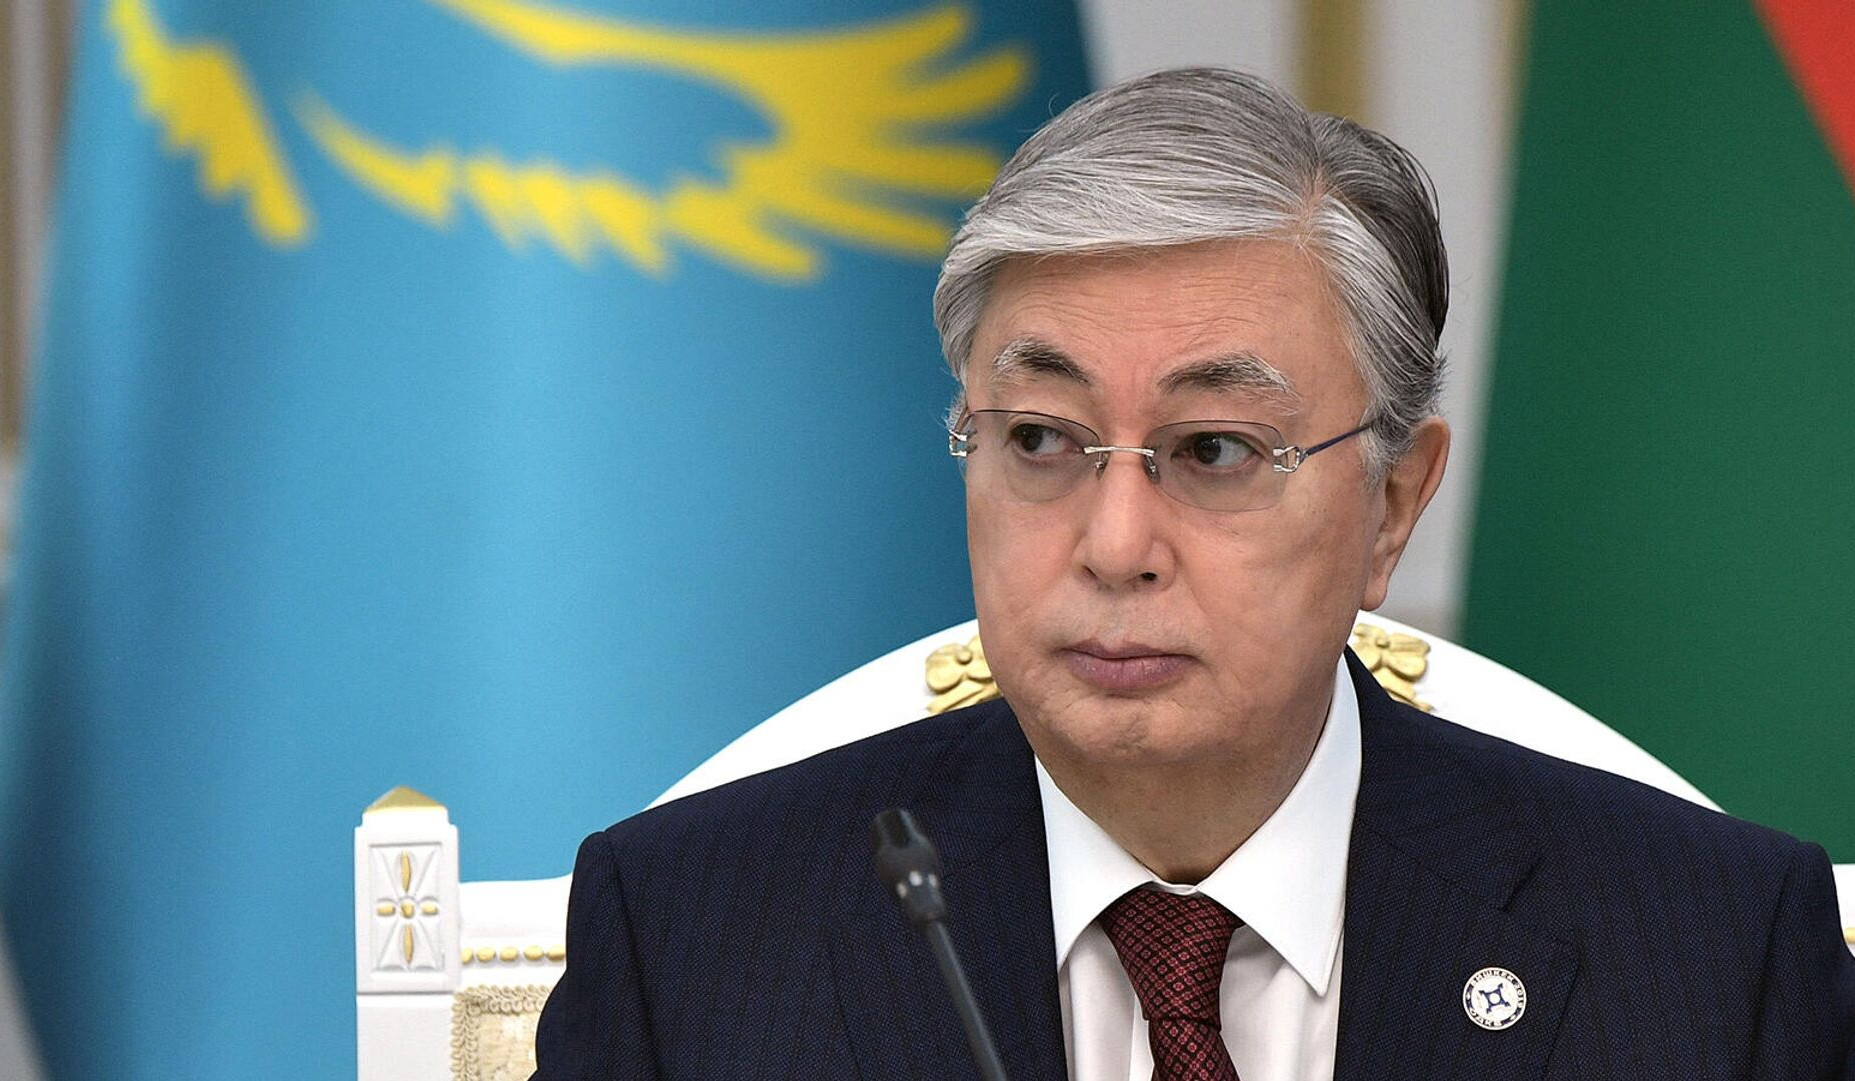 Ղազախստանի նախագահը հանձնարարել է դիվերսիֆիկացնել նավթի մատակարարումները